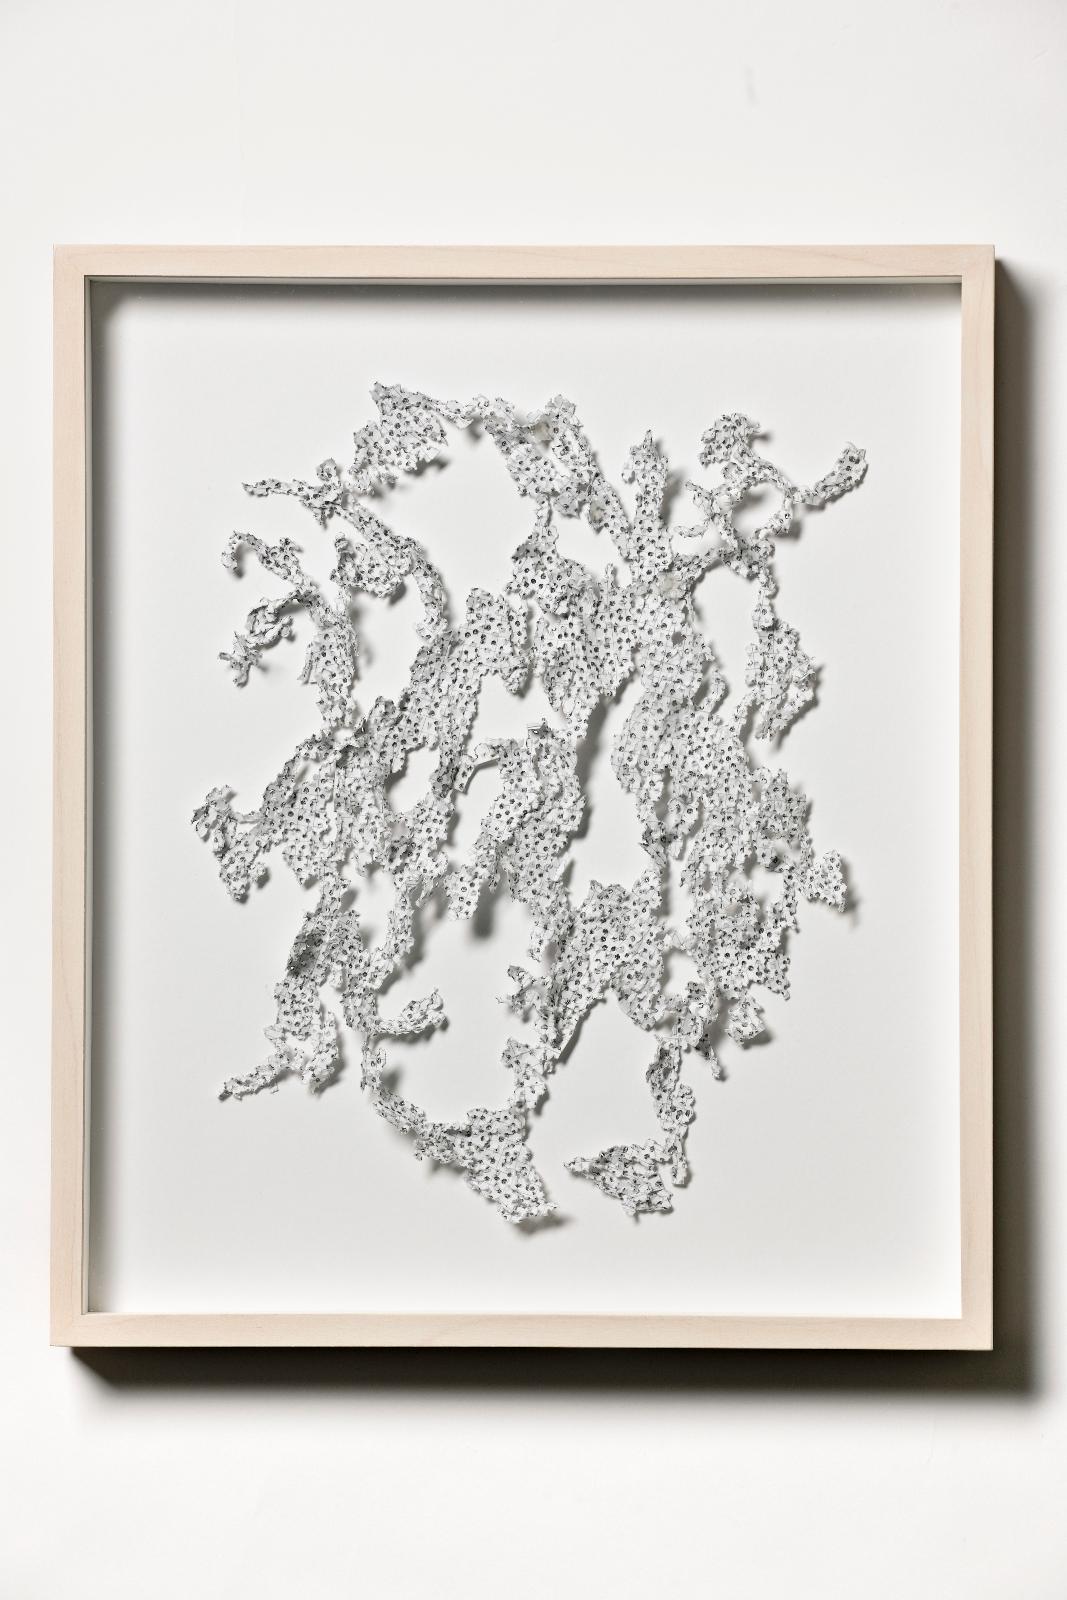 Martin Bruno Schmid, Bohrzeichnung, 2010, Bleistiftbohrung in Papier, 140 x 100 cm, gerahmt, verkauft!